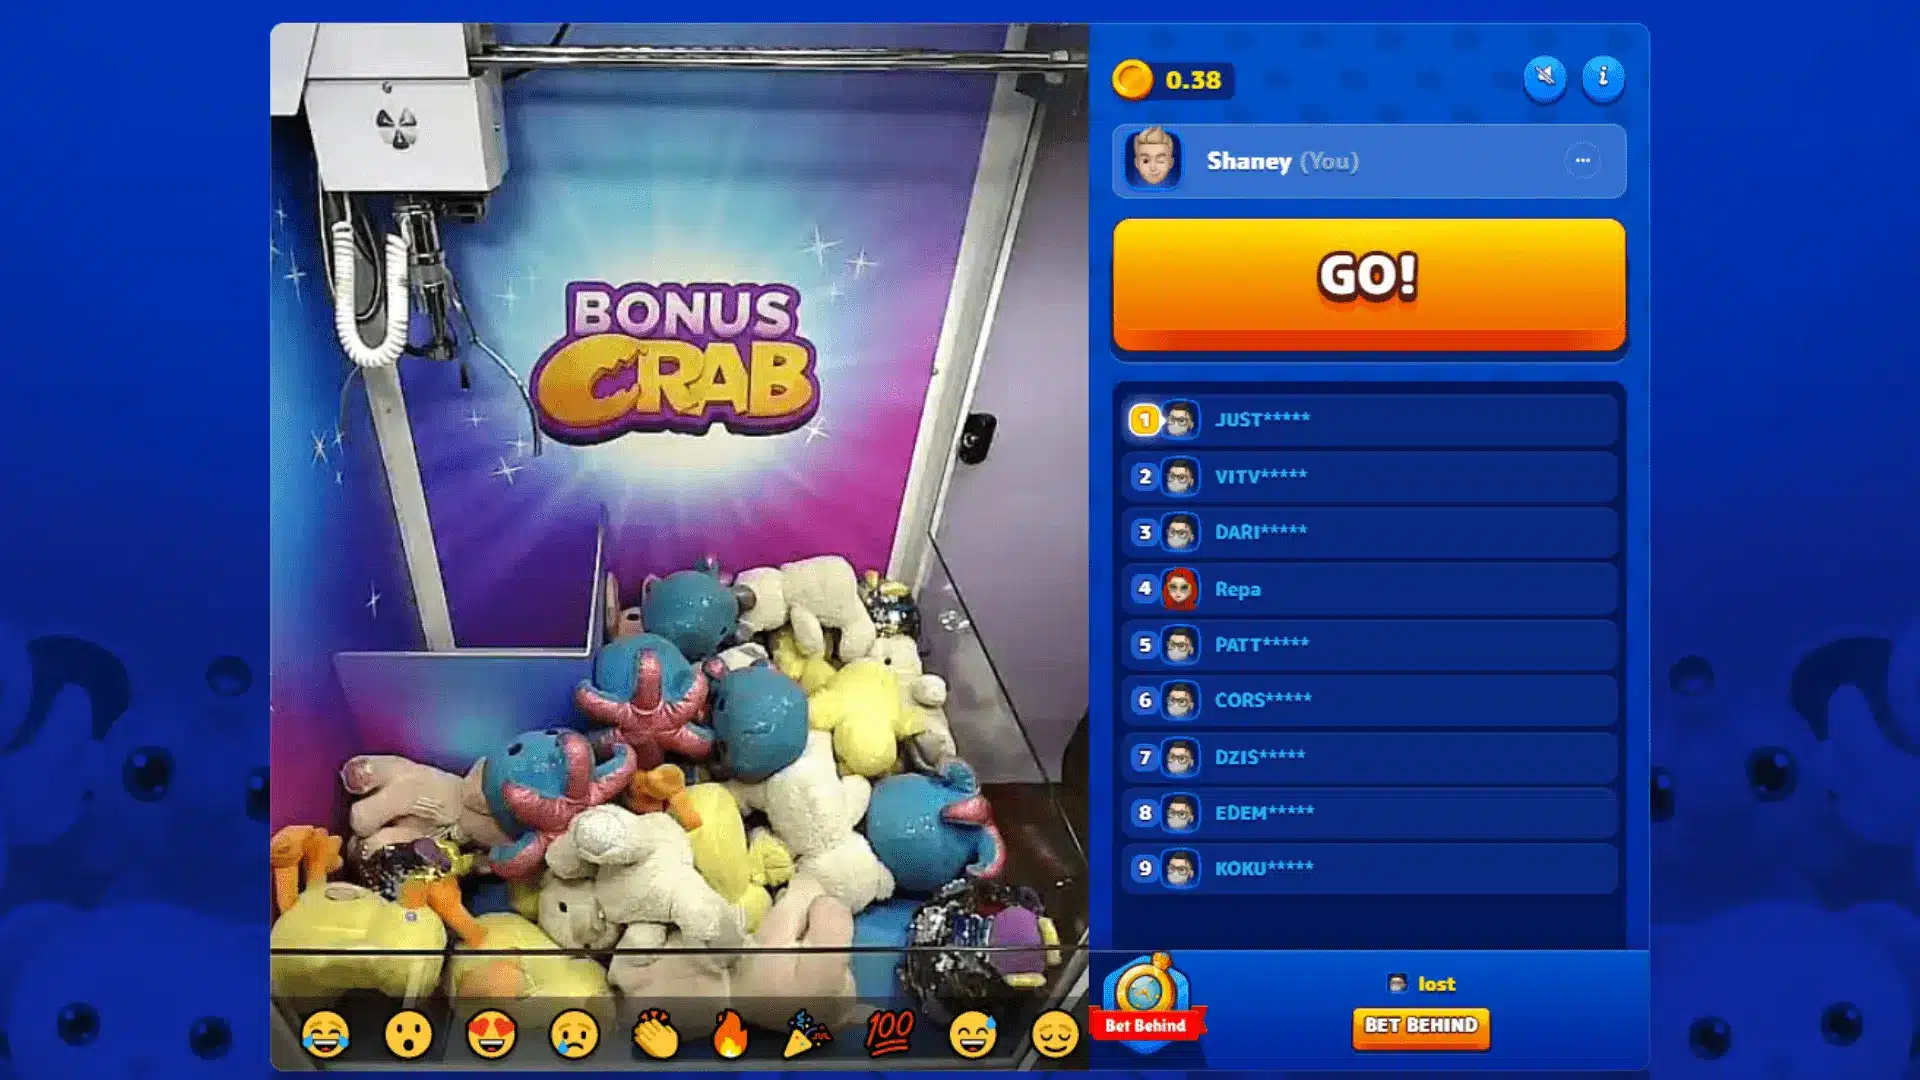 Aufbau & Funktionen einer Bonus Crab Casino Maschine